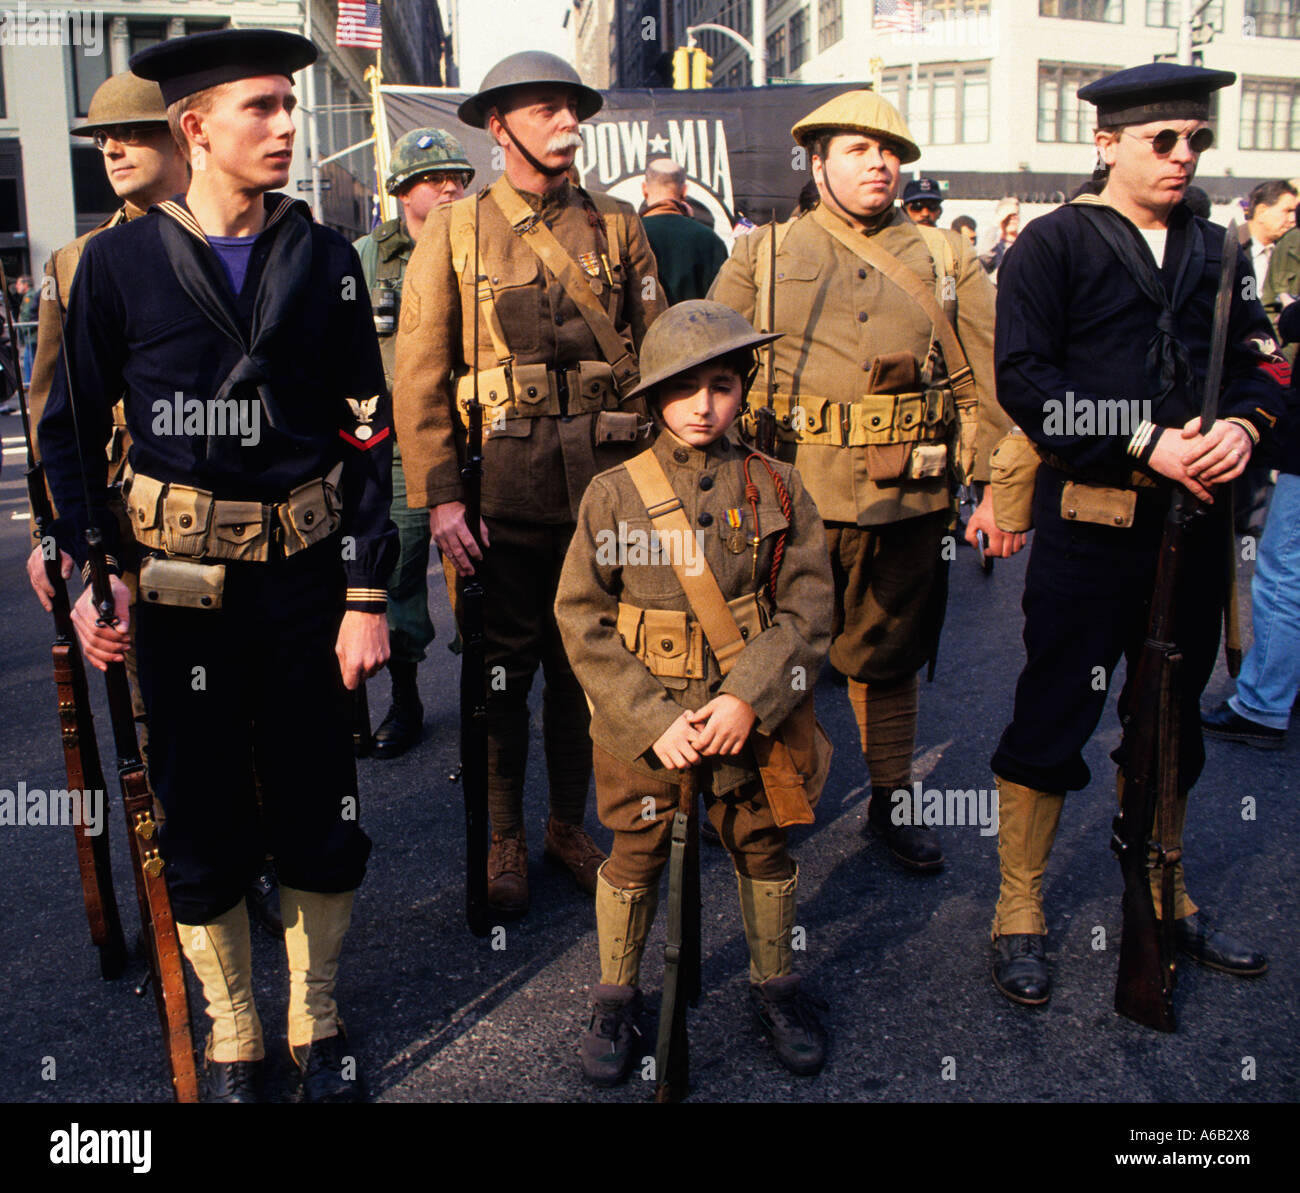 Soldaten: Junger Junge, junge Männer und alte Männer, gekleidet in Uniformen des Ersten Weltkriegs für die Veterans Day Parade, Militärparade zum Waffenstillstandstag, New York City, USA Stockfoto